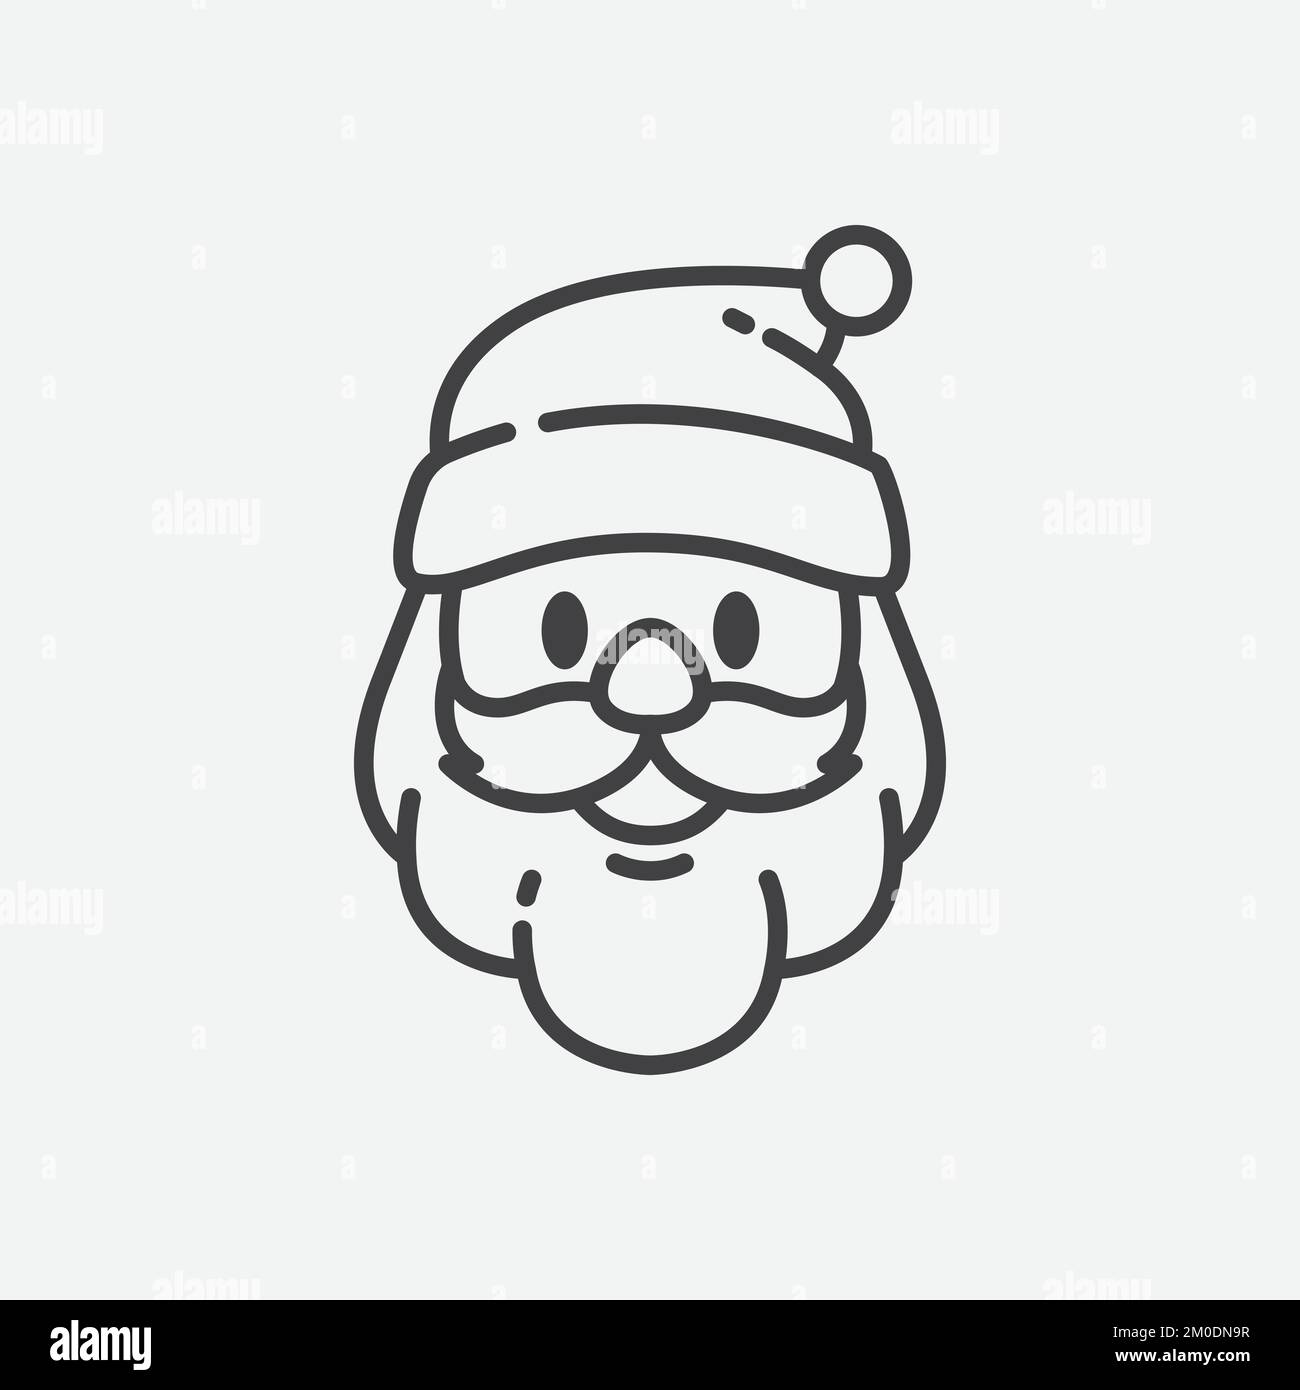 Weihnachtsmann-Ikone. Weihnachtsmann-Gesicht in flachem Design. Vorlage für Weihnachtskarten. Der weihnachtsmann hat einen Bart. Weihnachtsvektordarstellung Stock Vektor